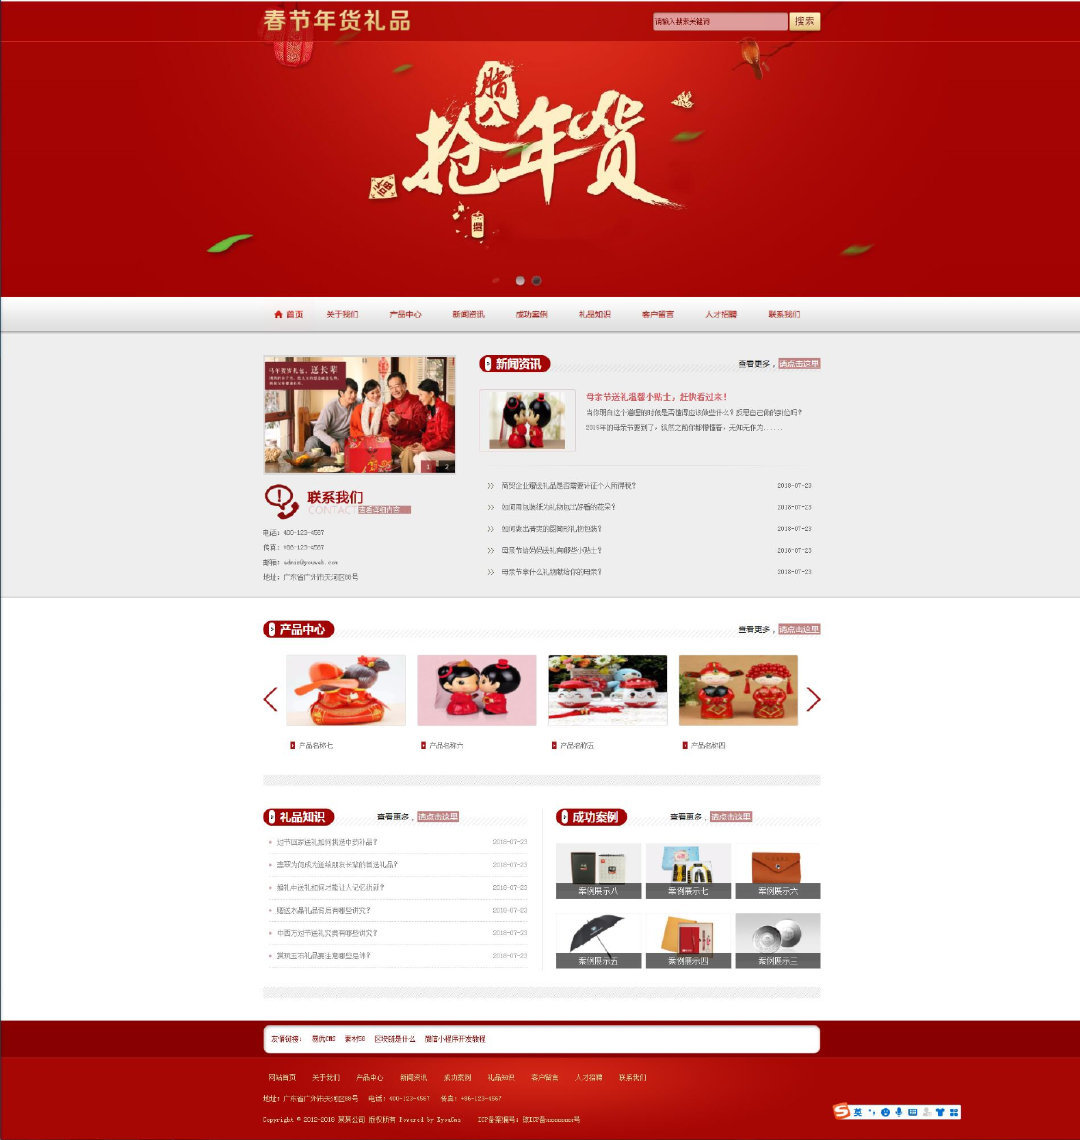 易优cms红色风格春节年货礼品公司网站模板源码-1